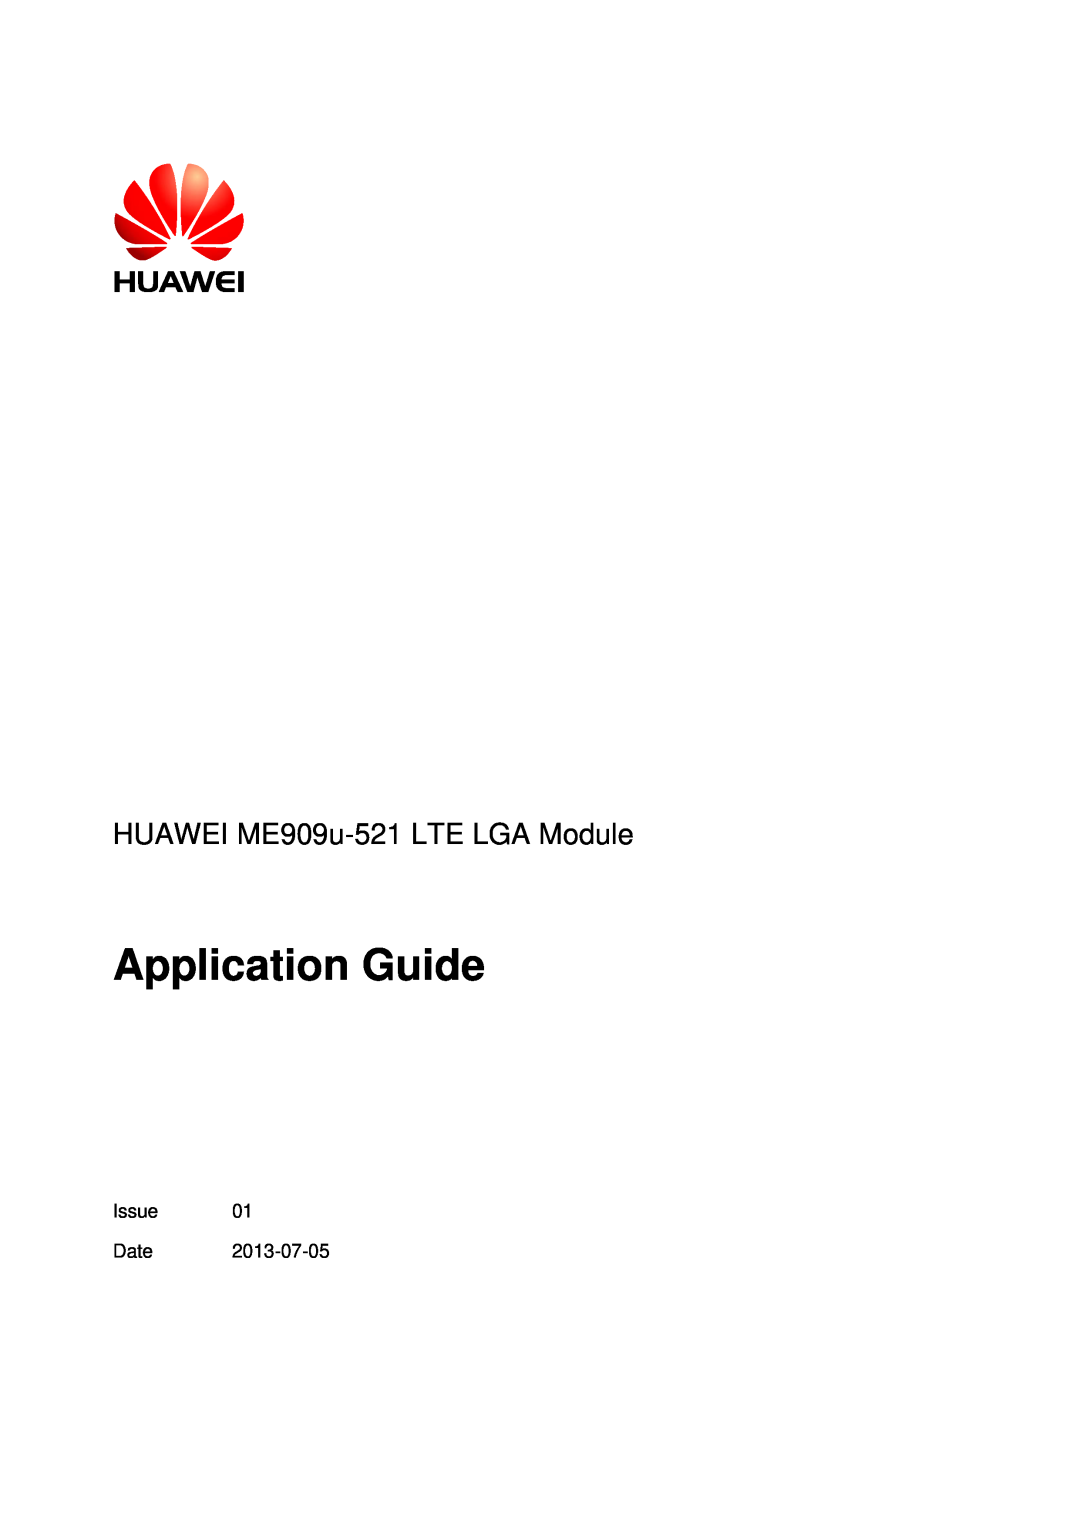 Huawei manual Application Guide, HUAWEI ME909u-521 LTE LGA Module 